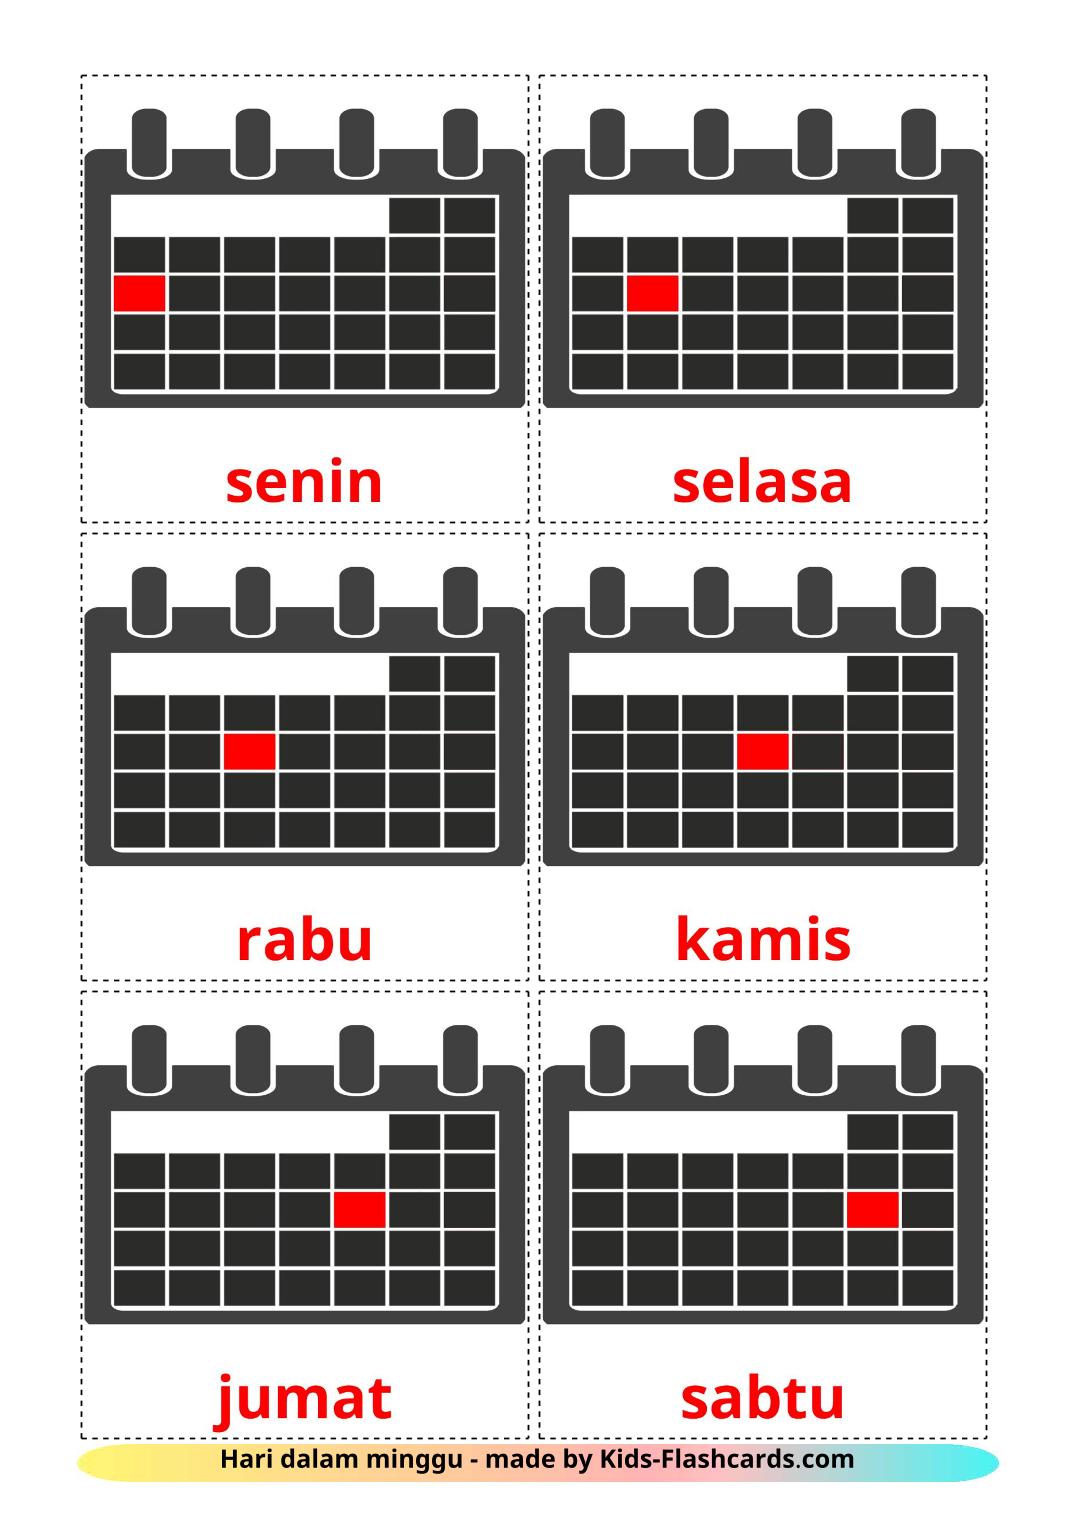 Dagen van de week - 12 gratis printbare indonesische kaarten